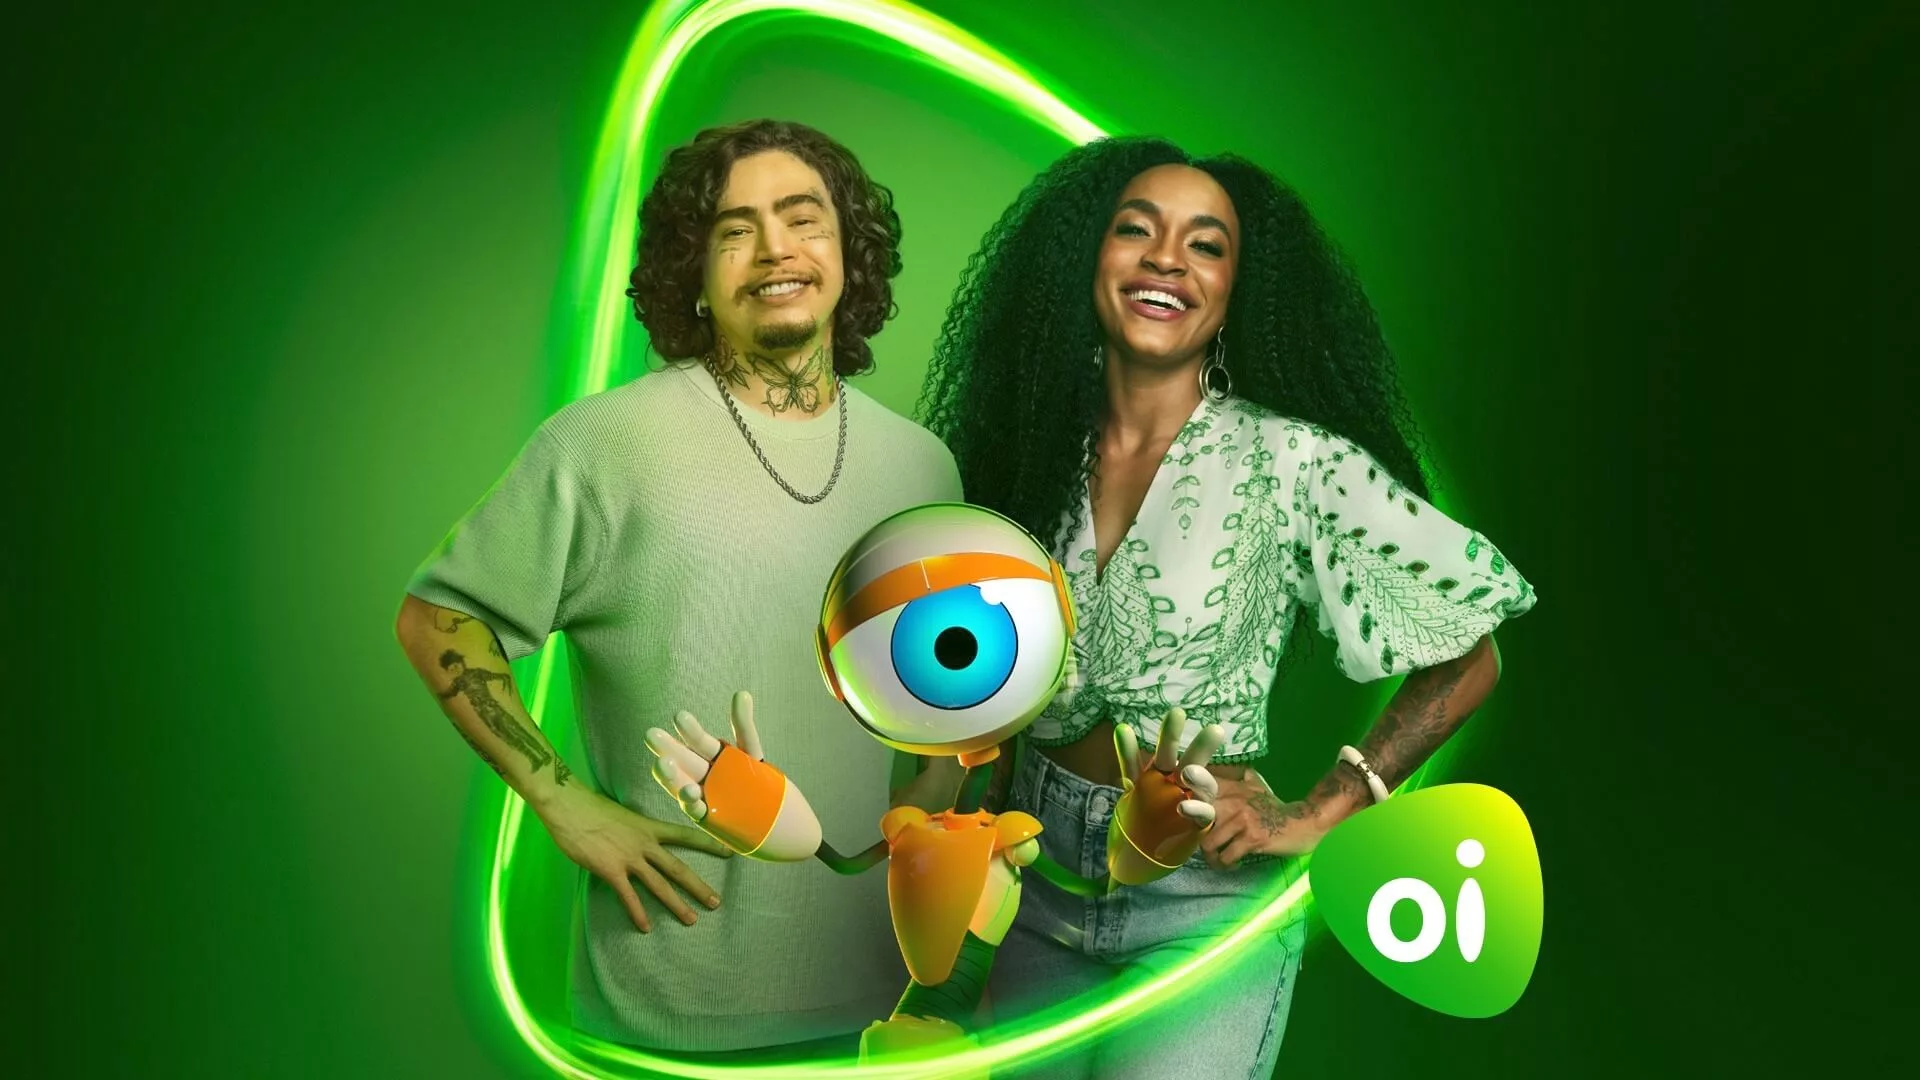 Oi renova parceria com Big Brother Brasil e investe em estratégia híbrida de ativações